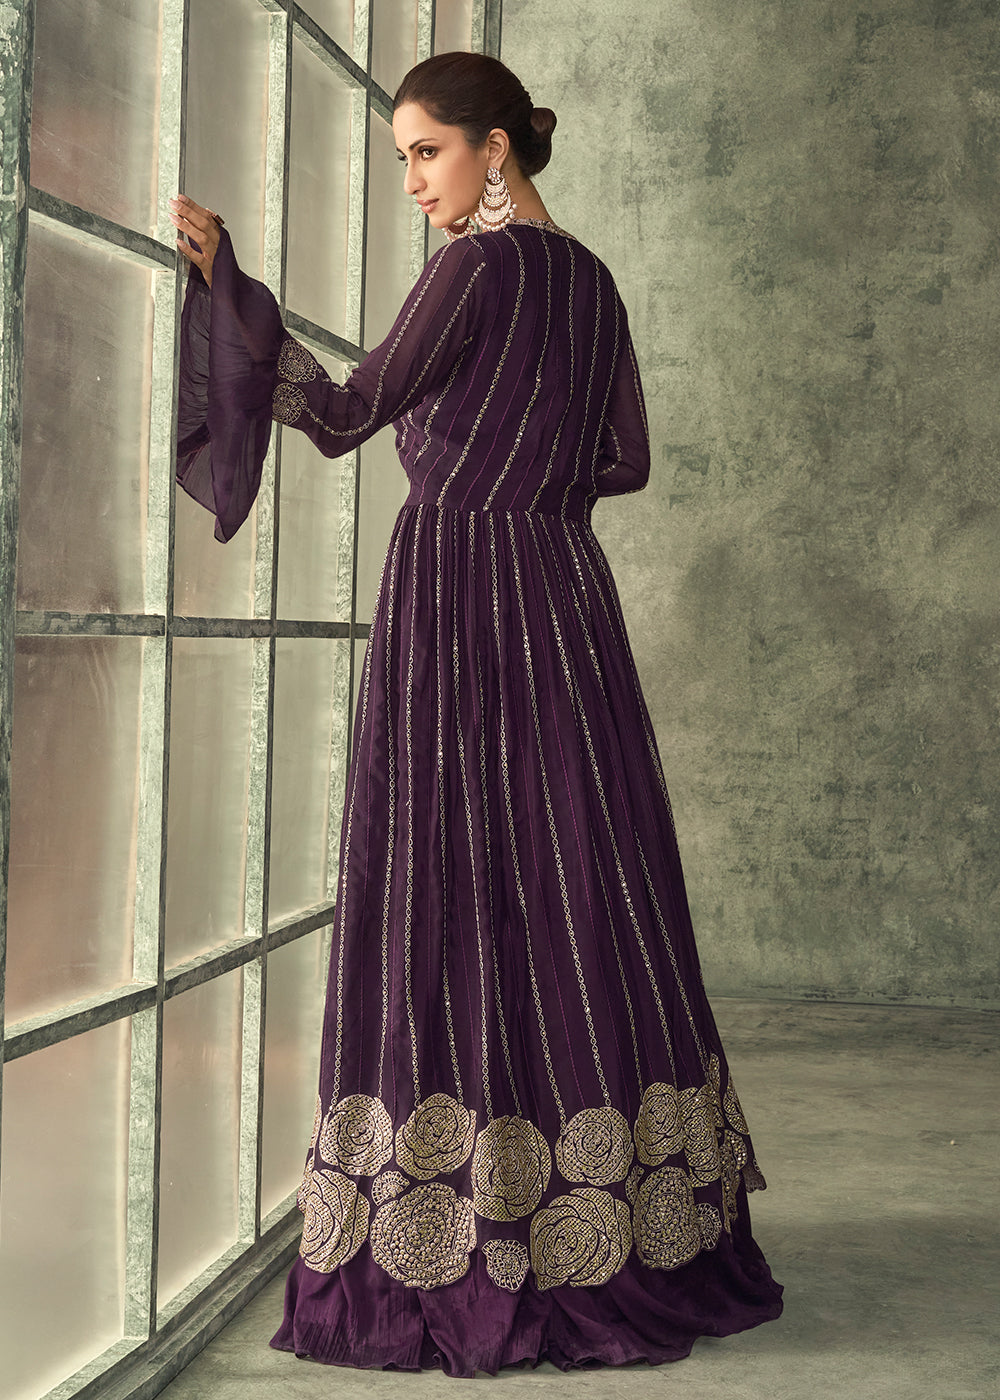 Photo of aubergine jacket lehenga | Designer dresses indian, Indian fashion  dresses, Indian fashion